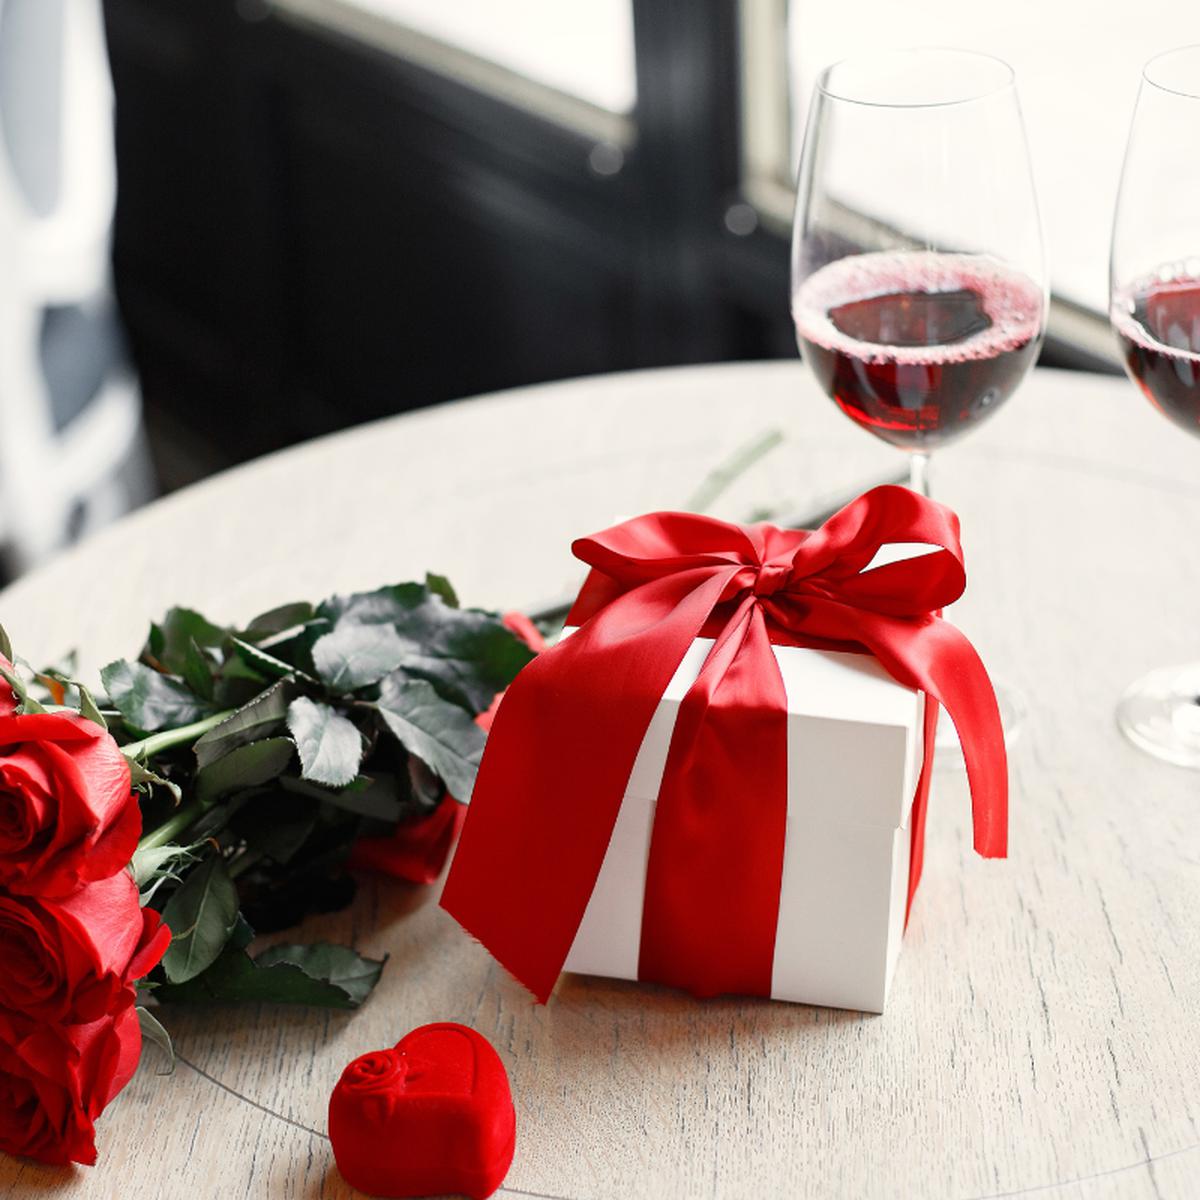 San Valentín: 10 ideas de regalos que nunca fallan, 14 de febrero, mes  del amor, día del amor y la amistad, regalos de San Valentín, VIU